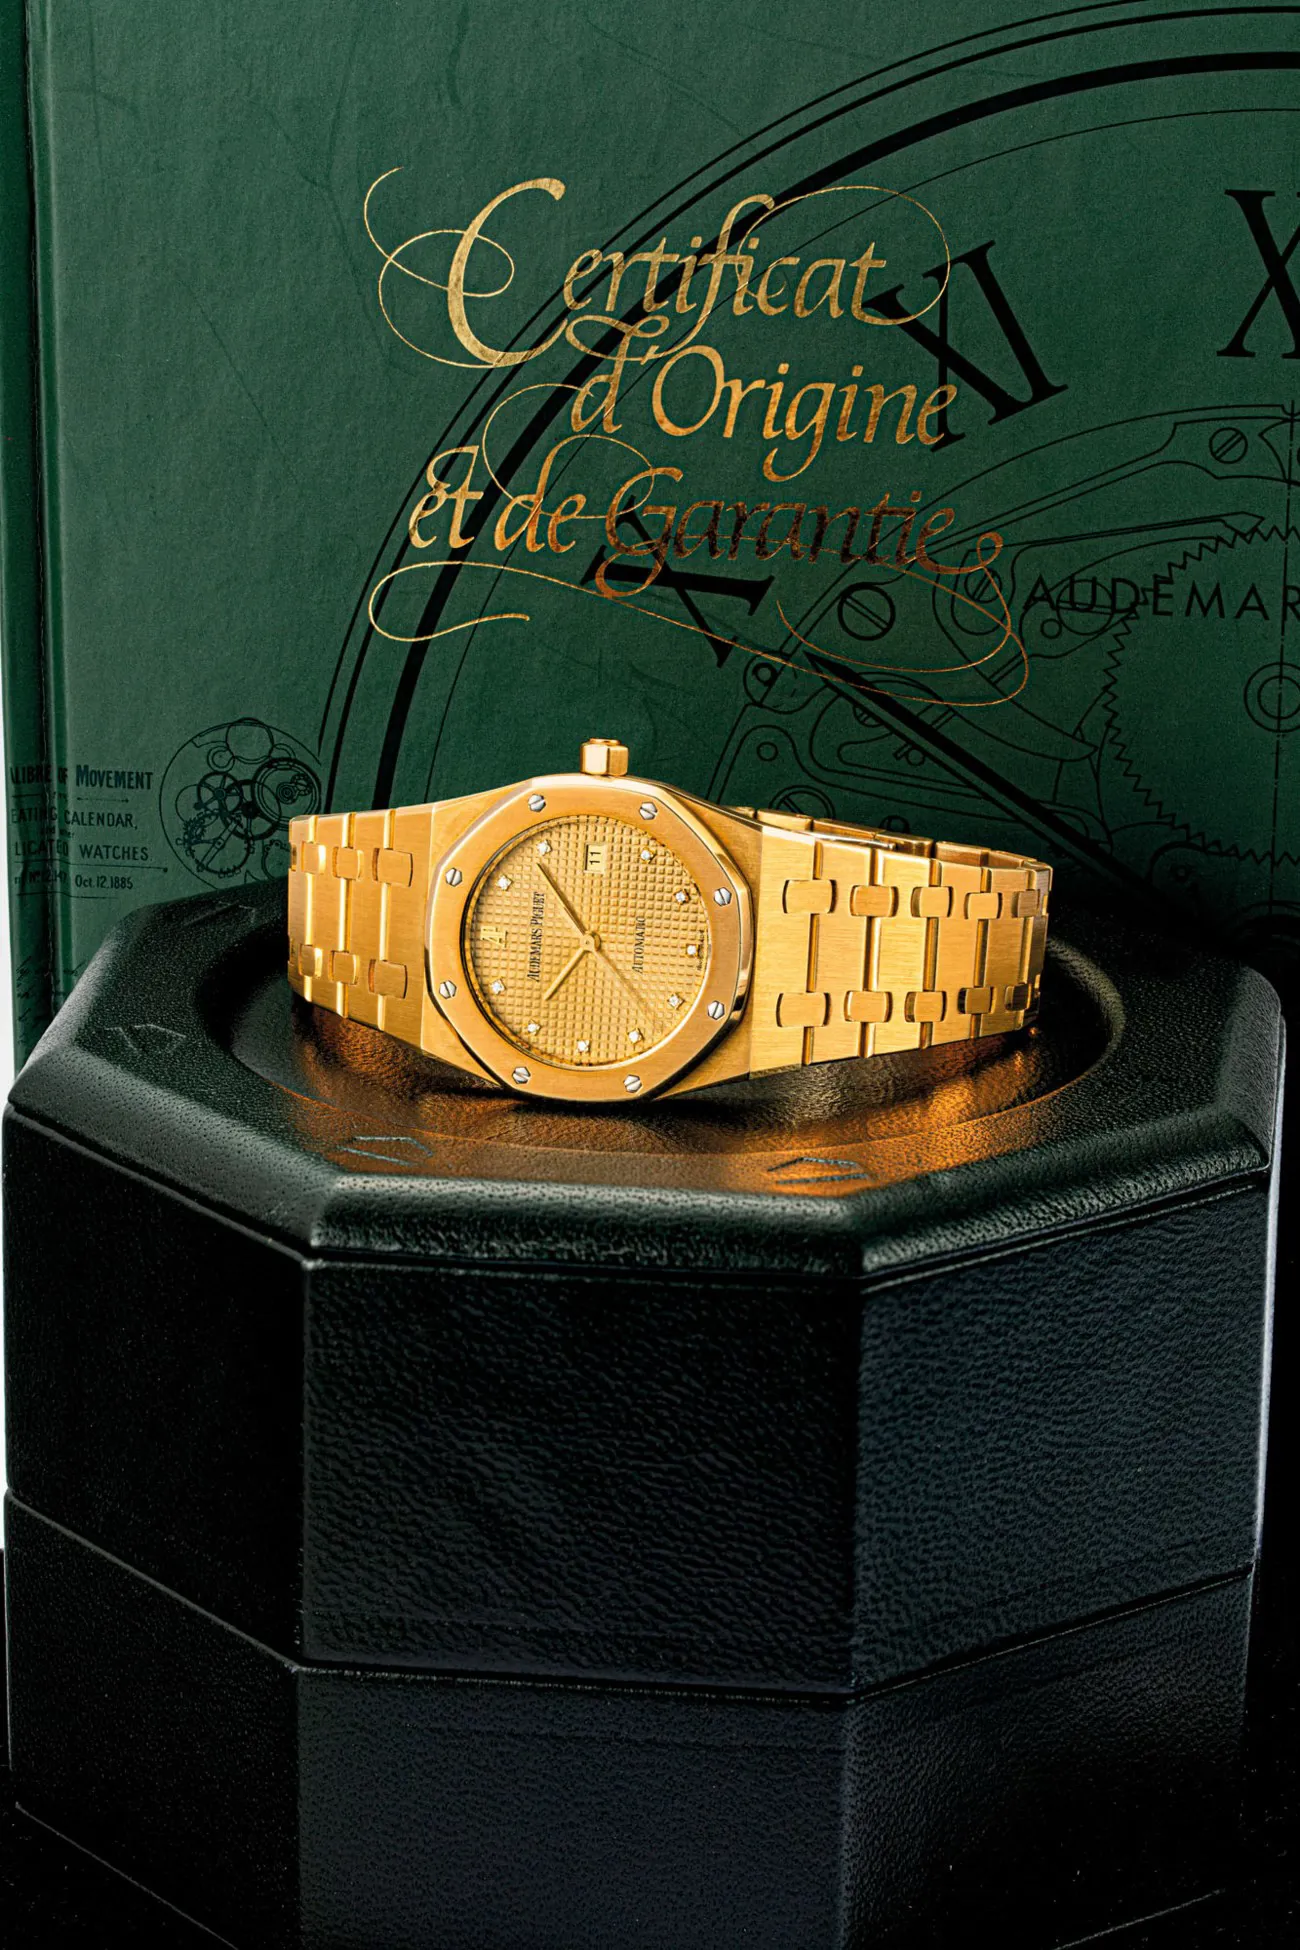 Audemars Piguet Royal Oak 15000 36mm 18k gold and diamond-set Golden